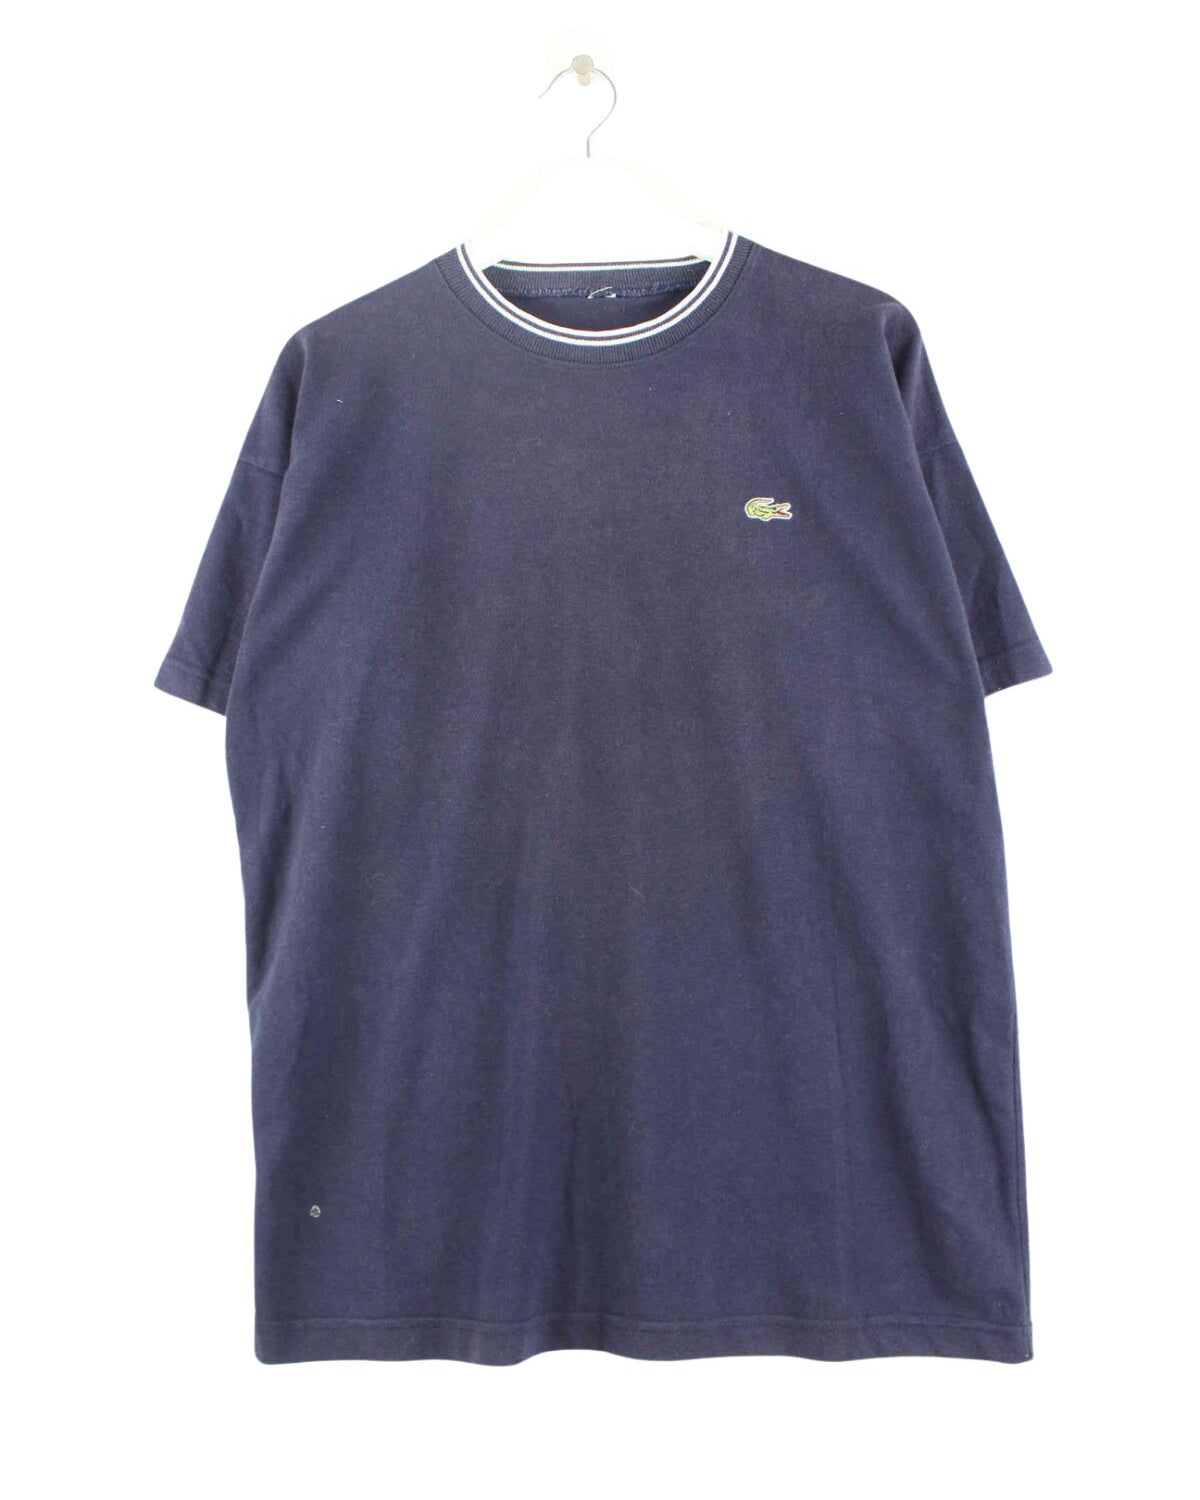 Lacoste 90s Vintage Basic T-Shirt Blau L (front image)